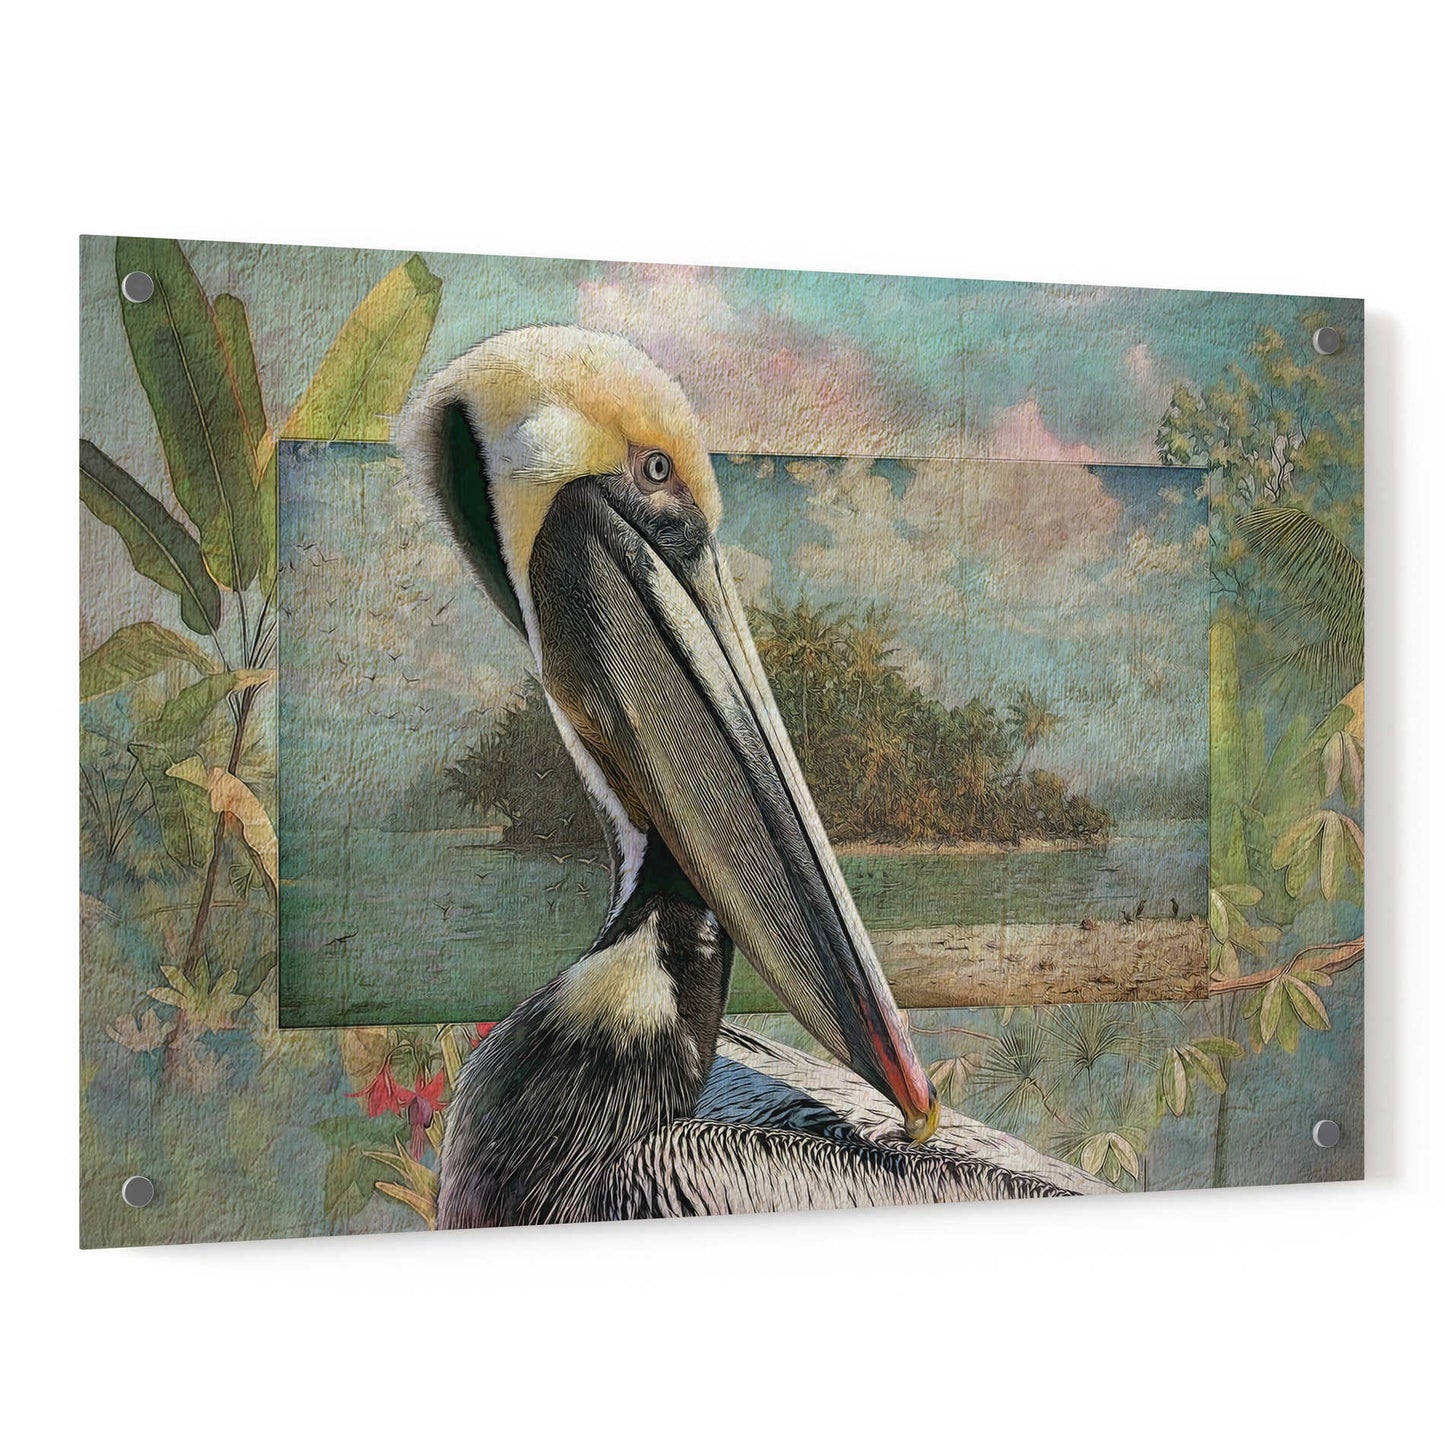 Epic Art 'Pelican Paradise II' by Steve Hunziker, Acrylic Glass Wall Art,36x24